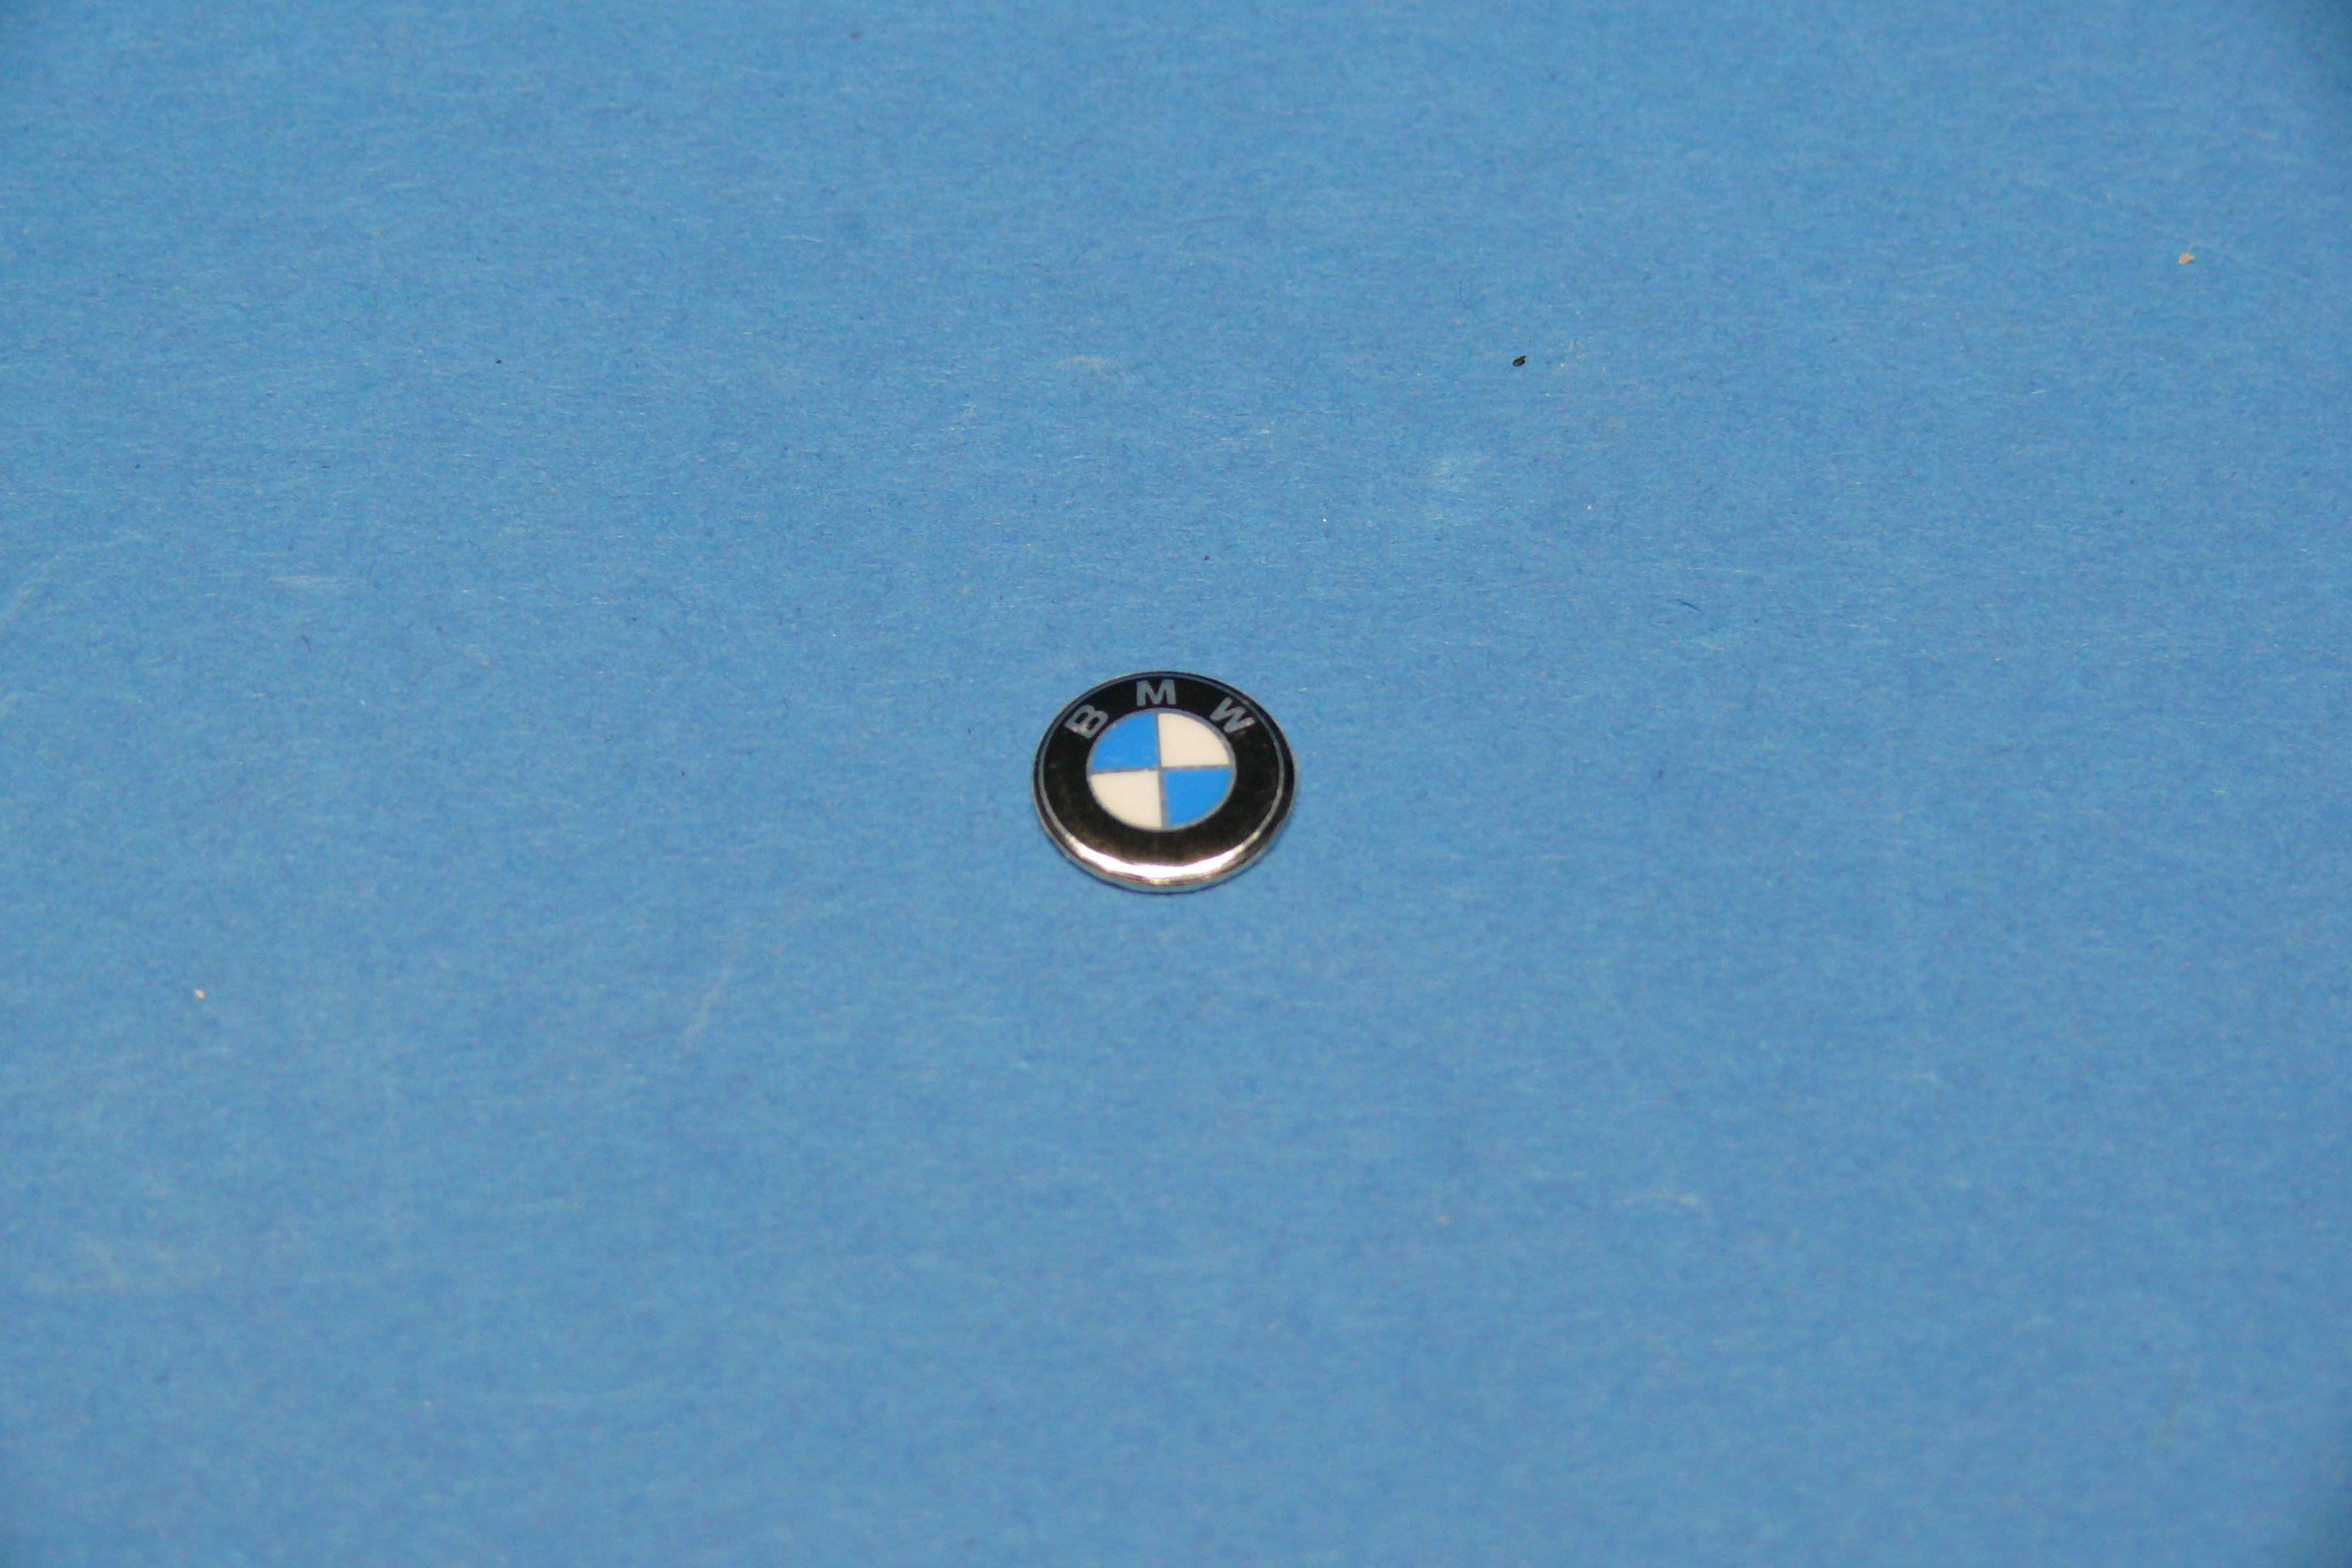 FMW Tuning & Autoteile - BMW Emblem für Schlüssel (11mm) BMW 1er E81-87,  3er E90-93, 5er E60/E61, 6er E63/E64 (66122155754) 